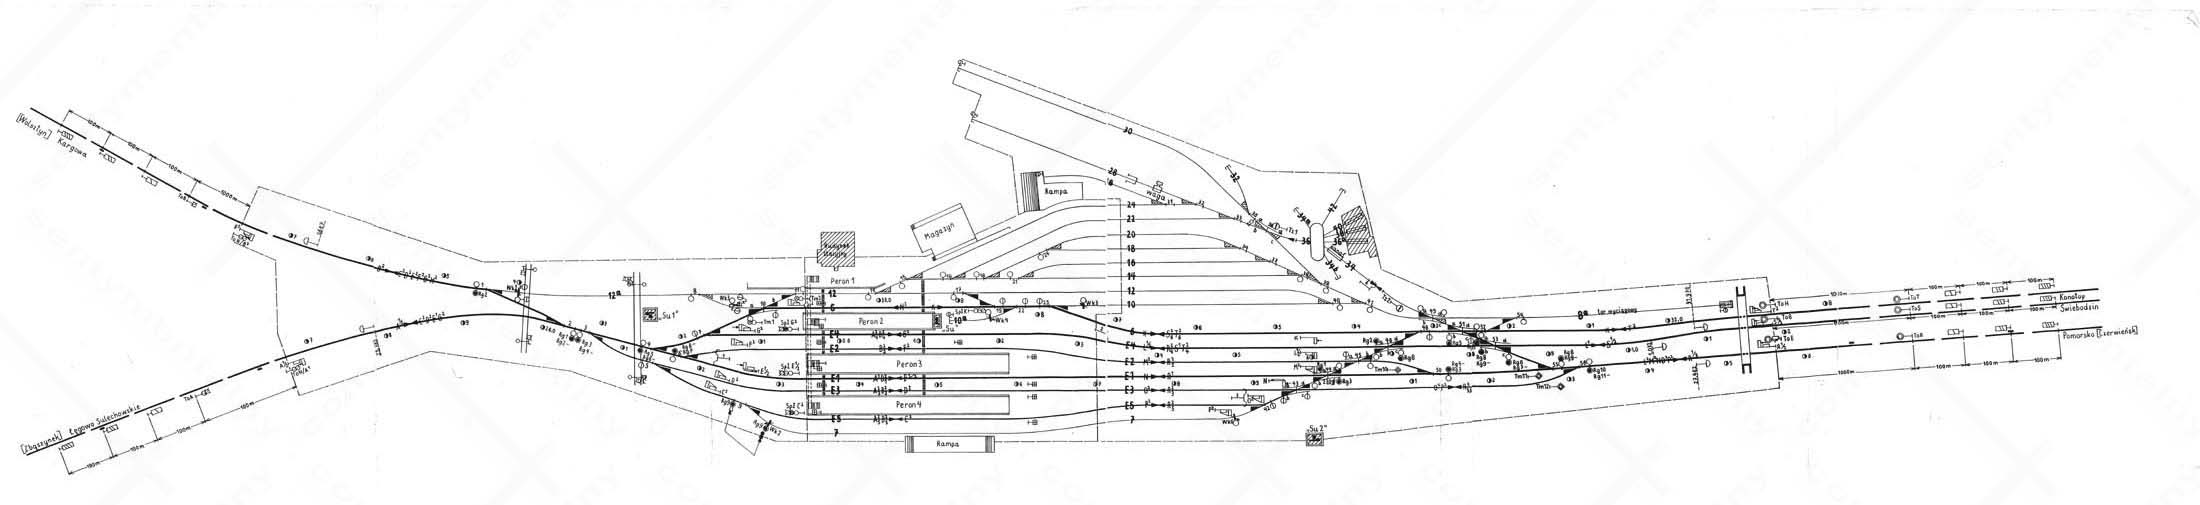 Plan stacji Sulechów z 1948 roku.